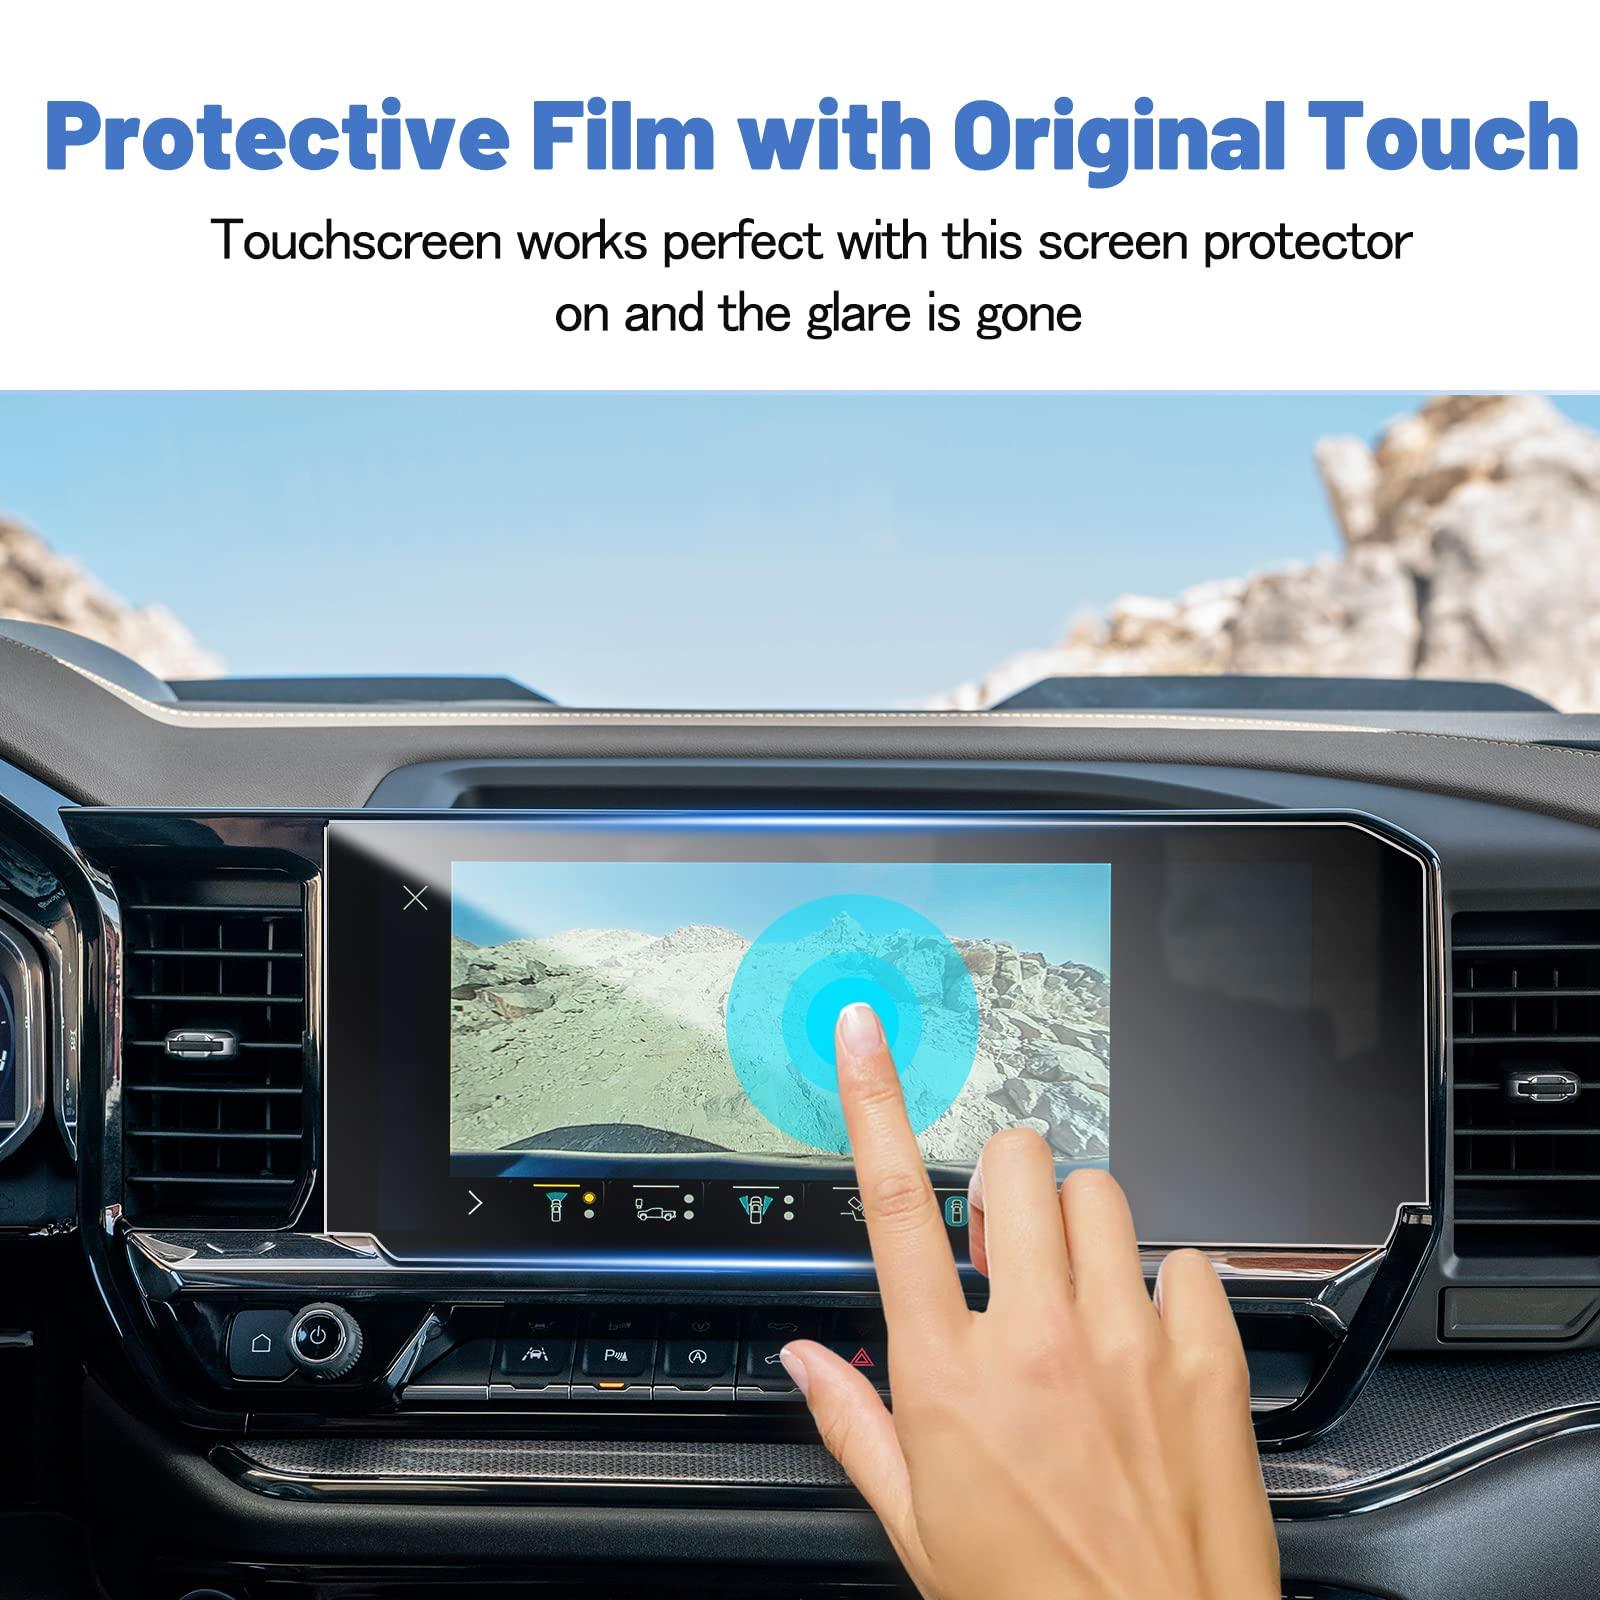 Chevy Silverado 1500 13.4" Screen Protector 2022+ - LFOTPP Car Accessories